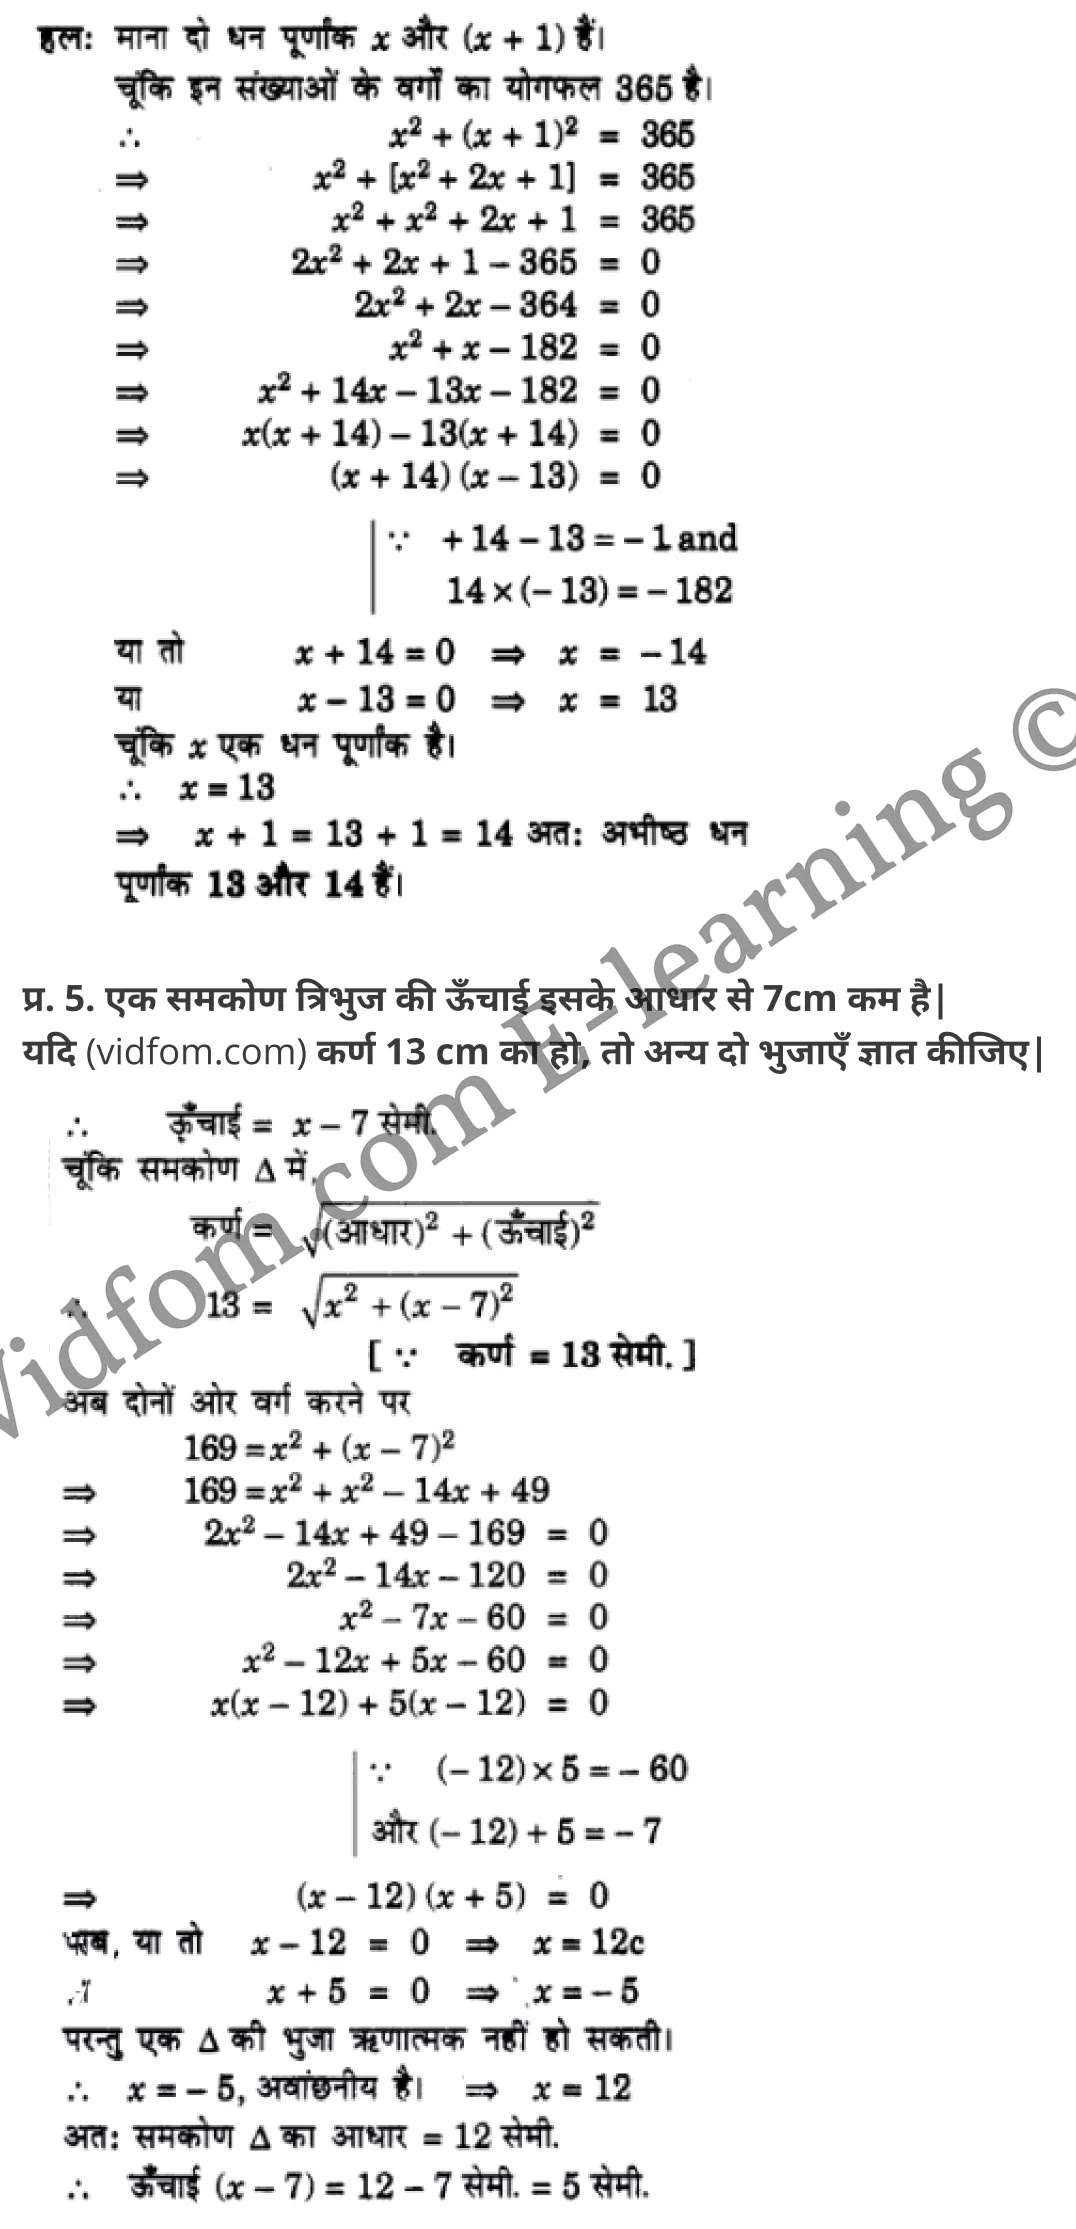 कक्षा 10 गणित  के नोट्स  हिंदी में एनसीईआरटी समाधान,     class 10 Maths chapter 4,   class 10 Maths chapter 4 ncert solutions in Maths,  class 10 Maths chapter 4 notes in hindi,   class 10 Maths chapter 4 question answer,   class 10 Maths chapter 4 notes,   class 10 Maths chapter 4 class 10 Maths  chapter 4 in  hindi,    class 10 Maths chapter 4 important questions in  hindi,   class 10 Maths hindi  chapter 4 notes in hindi,   class 10 Maths  chapter 4 test,   class 10 Maths  chapter 4 class 10 Maths  chapter 4 pdf,   class 10 Maths  chapter 4 notes pdf,   class 10 Maths  chapter 4 exercise solutions,  class 10 Maths  chapter 4,  class 10 Maths  chapter 4 notes study rankers,  class 10 Maths  chapter 4 notes,   class 10 Maths hindi  chapter 4 notes,    class 10 Maths   chapter 4  class 10  notes pdf,  class 10 Maths  chapter 4 class 10  notes  ncert,  class 10 Maths  chapter 4 class 10 pdf,   class 10 Maths  chapter 4  book,   class 10 Maths  chapter 4 quiz class 10  ,    10  th class 10 Maths chapter 4  book up board,   up board 10  th class 10 Maths chapter 4 notes,  class 10 Maths,   class 10 Maths ncert solutions in Maths,   class 10 Maths notes in hindi,   class 10 Maths question answer,   class 10 Maths notes,  class 10 Maths class 10 Maths  chapter 4 in  hindi,    class 10 Maths important questions in  hindi,   class 10 Maths notes in hindi,    class 10 Maths test,  class 10 Maths class 10 Maths  chapter 4 pdf,   class 10 Maths notes pdf,   class 10 Maths exercise solutions,   class 10 Maths,  class 10 Maths notes study rankers,   class 10 Maths notes,  class 10 Maths notes,   class 10 Maths  class 10  notes pdf,   class 10 Maths class 10  notes  ncert,   class 10 Maths class 10 pdf,   class 10 Maths  book,  class 10 Maths quiz class 10  ,  10  th class 10 Maths    book up board,    up board 10  th class 10 Maths notes,      कक्षा 10 गणित अध्याय 4 ,  कक्षा 10 गणित, कक्षा 10 गणित अध्याय 4  के नोट्स हिंदी में,  कक्षा 10 का गणित अध्याय 4 का प्रश्न उत्तर,  कक्षा 10 गणित अध्याय 4  के नोट्स,  10 कक्षा गणित  हिंदी में, कक्षा 10 गणित अध्याय 4  हिंदी में,  कक्षा 10 गणित अध्याय 4  महत्वपूर्ण प्रश्न हिंदी में, कक्षा 10   हिंदी के नोट्स  हिंदी में, गणित हिंदी  कक्षा 10 नोट्स pdf,    गणित हिंदी  कक्षा 10 नोट्स 2021 ncert,  गणित हिंदी  कक्षा 10 pdf,   गणित हिंदी  पुस्तक,   गणित हिंदी की बुक,   गणित हिंदी  प्रश्नोत्तरी class 10 ,  10   वीं गणित  पुस्तक up board,   बिहार बोर्ड 10  पुस्तक वीं गणित नोट्स,    गणित  कक्षा 10 नोट्स 2021 ncert,   गणित  कक्षा 10 pdf,   गणित  पुस्तक,   गणित की बुक,   गणित  प्रश्नोत्तरी class 10,   कक्षा 10 गणित,  कक्षा 10 गणित  के नोट्स हिंदी में,  कक्षा 10 का गणित का प्रश्न उत्तर,  कक्षा 10 गणित  के नोट्स, 10 कक्षा गणित 2021  हिंदी में, कक्षा 10 गणित  हिंदी में, कक्षा 10 गणित  महत्वपूर्ण प्रश्न हिंदी में, कक्षा 10 गणित  हिंदी के नोट्स  हिंदी में, गणित हिंदी  कक्षा 10 नोट्स pdf,   गणित हिंदी  कक्षा 10 नोट्स 2021 ncert,   गणित हिंदी  कक्षा 10 pdf,  गणित हिंदी  पुस्तक,   गणित हिंदी की बुक,   गणित हिंदी  प्रश्नोत्तरी class 10 ,  10   वीं गणित  पुस्तक up board,  बिहार बोर्ड 10  पुस्तक वीं गणित नोट्स,    गणित  कक्षा 10 नोट्स 2021 ncert,  गणित  कक्षा 10 pdf,   गणित  पुस्तक,  गणित की बुक,   गणित  प्रश्नोत्तरी   class 10,   10th Maths   book in hindi, 10th Maths notes in hindi, cbse books for class 10  , cbse books in hindi, cbse ncert books, class 10   Maths   notes in hindi,  class 10 Maths hindi ncert solutions, Maths 2020, Maths  2021,